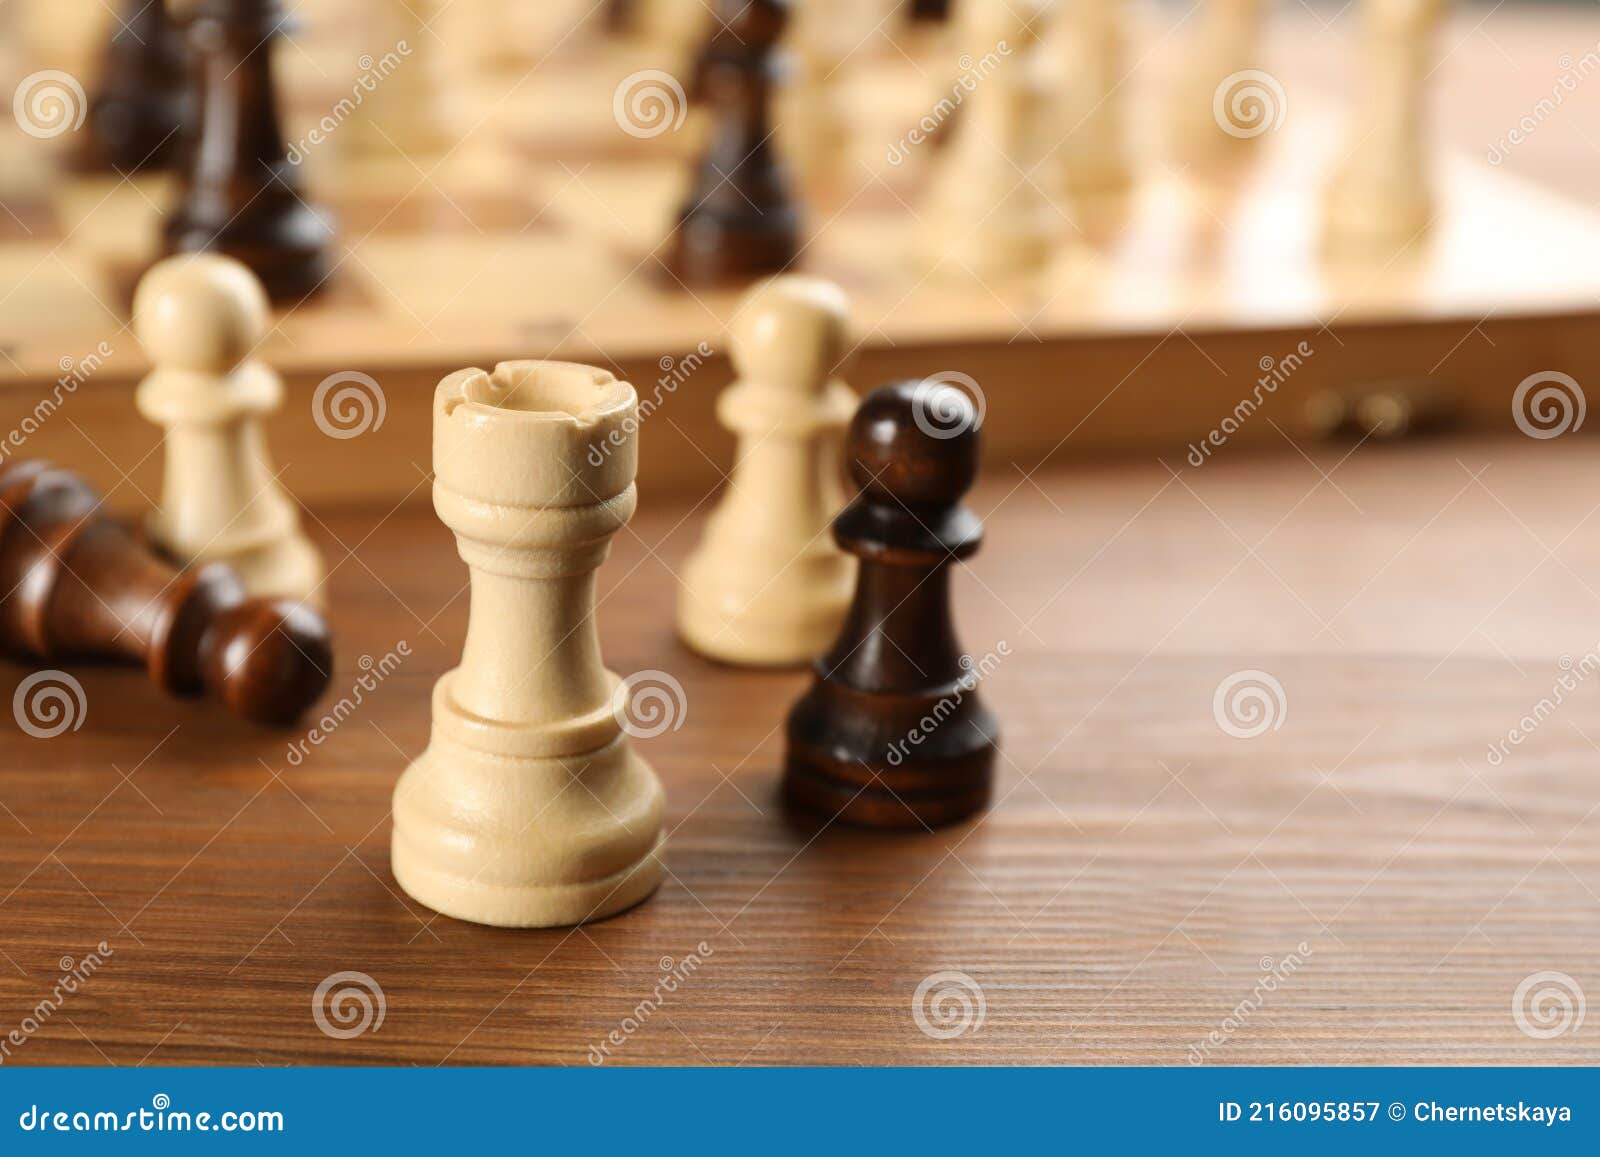 Close-up jogo de tabuleiro de xadrez de posição padrão na mesa